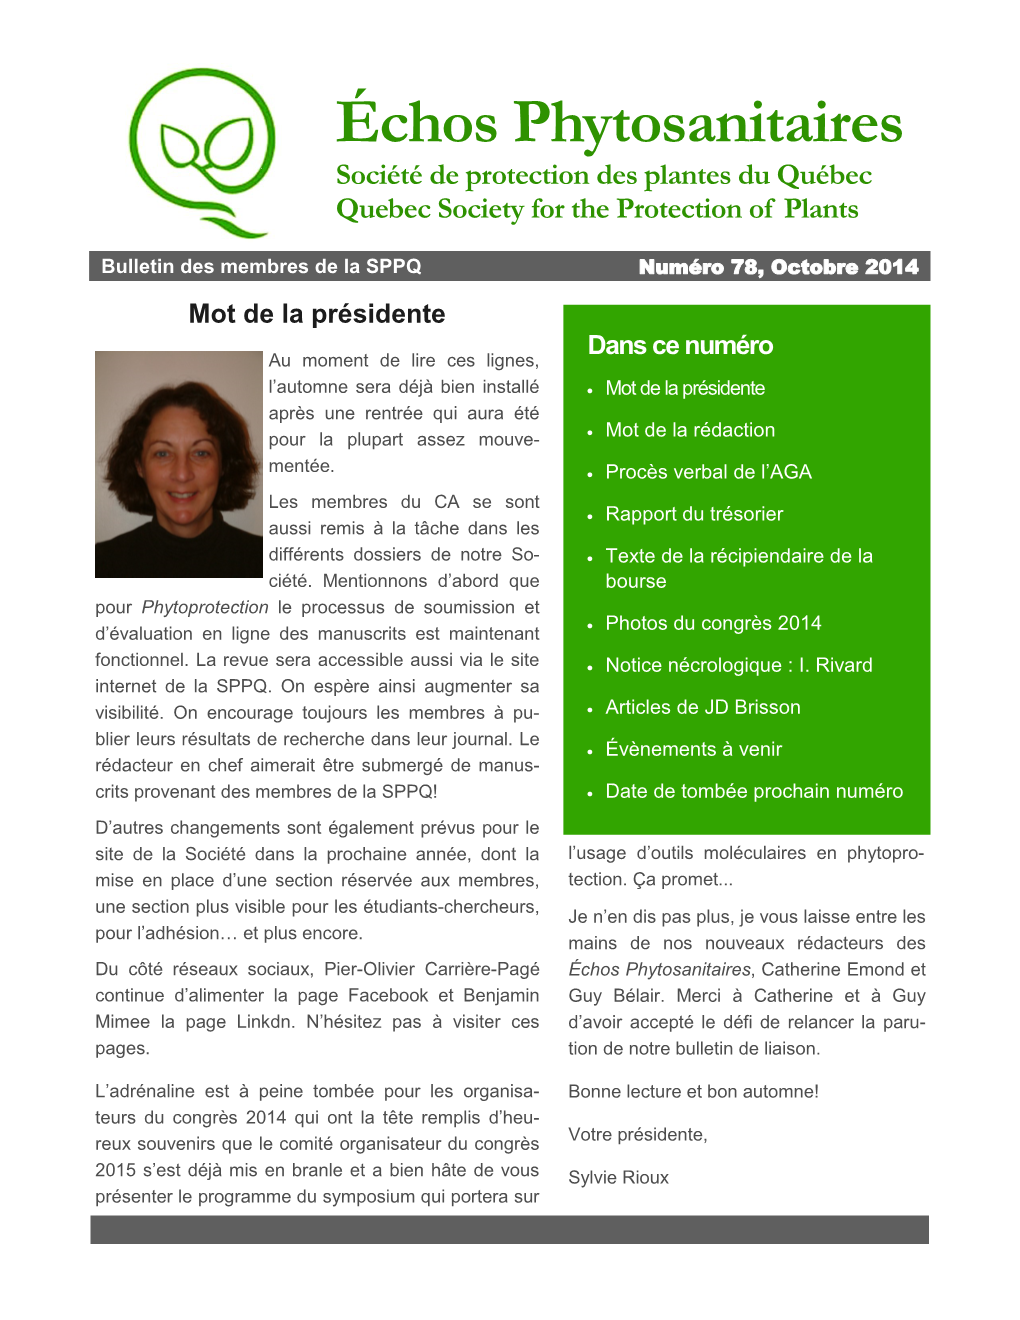 Échos Phytosanitaires Société De Protection Des Plantes Du Québec Quebec Society for the Protection of Plants